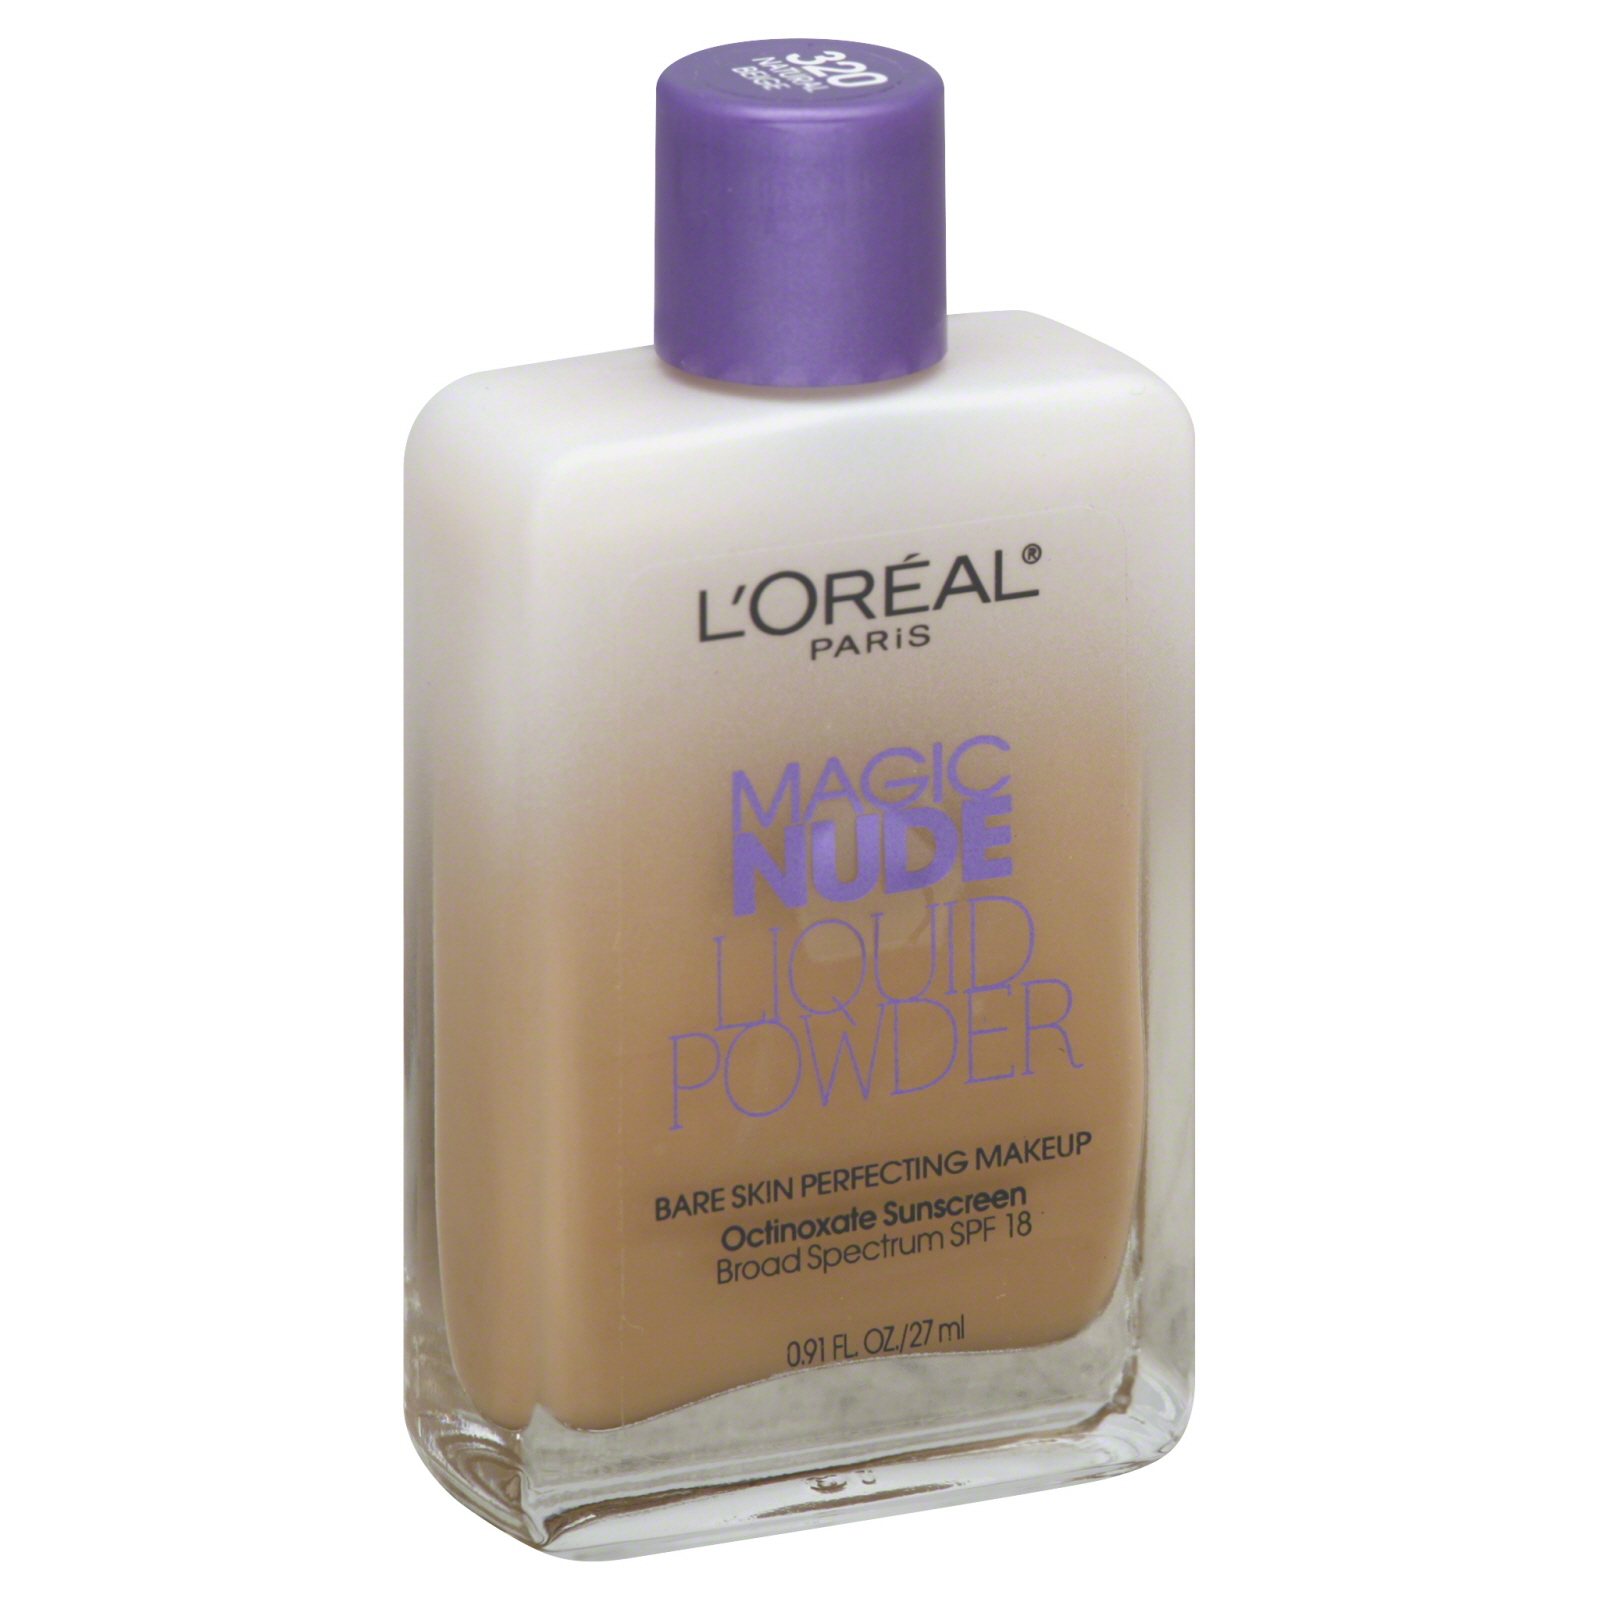 L'Oreal Magic Nude Liquid Powder, Natural  Beige, SPF 18, 0.91 fl oz